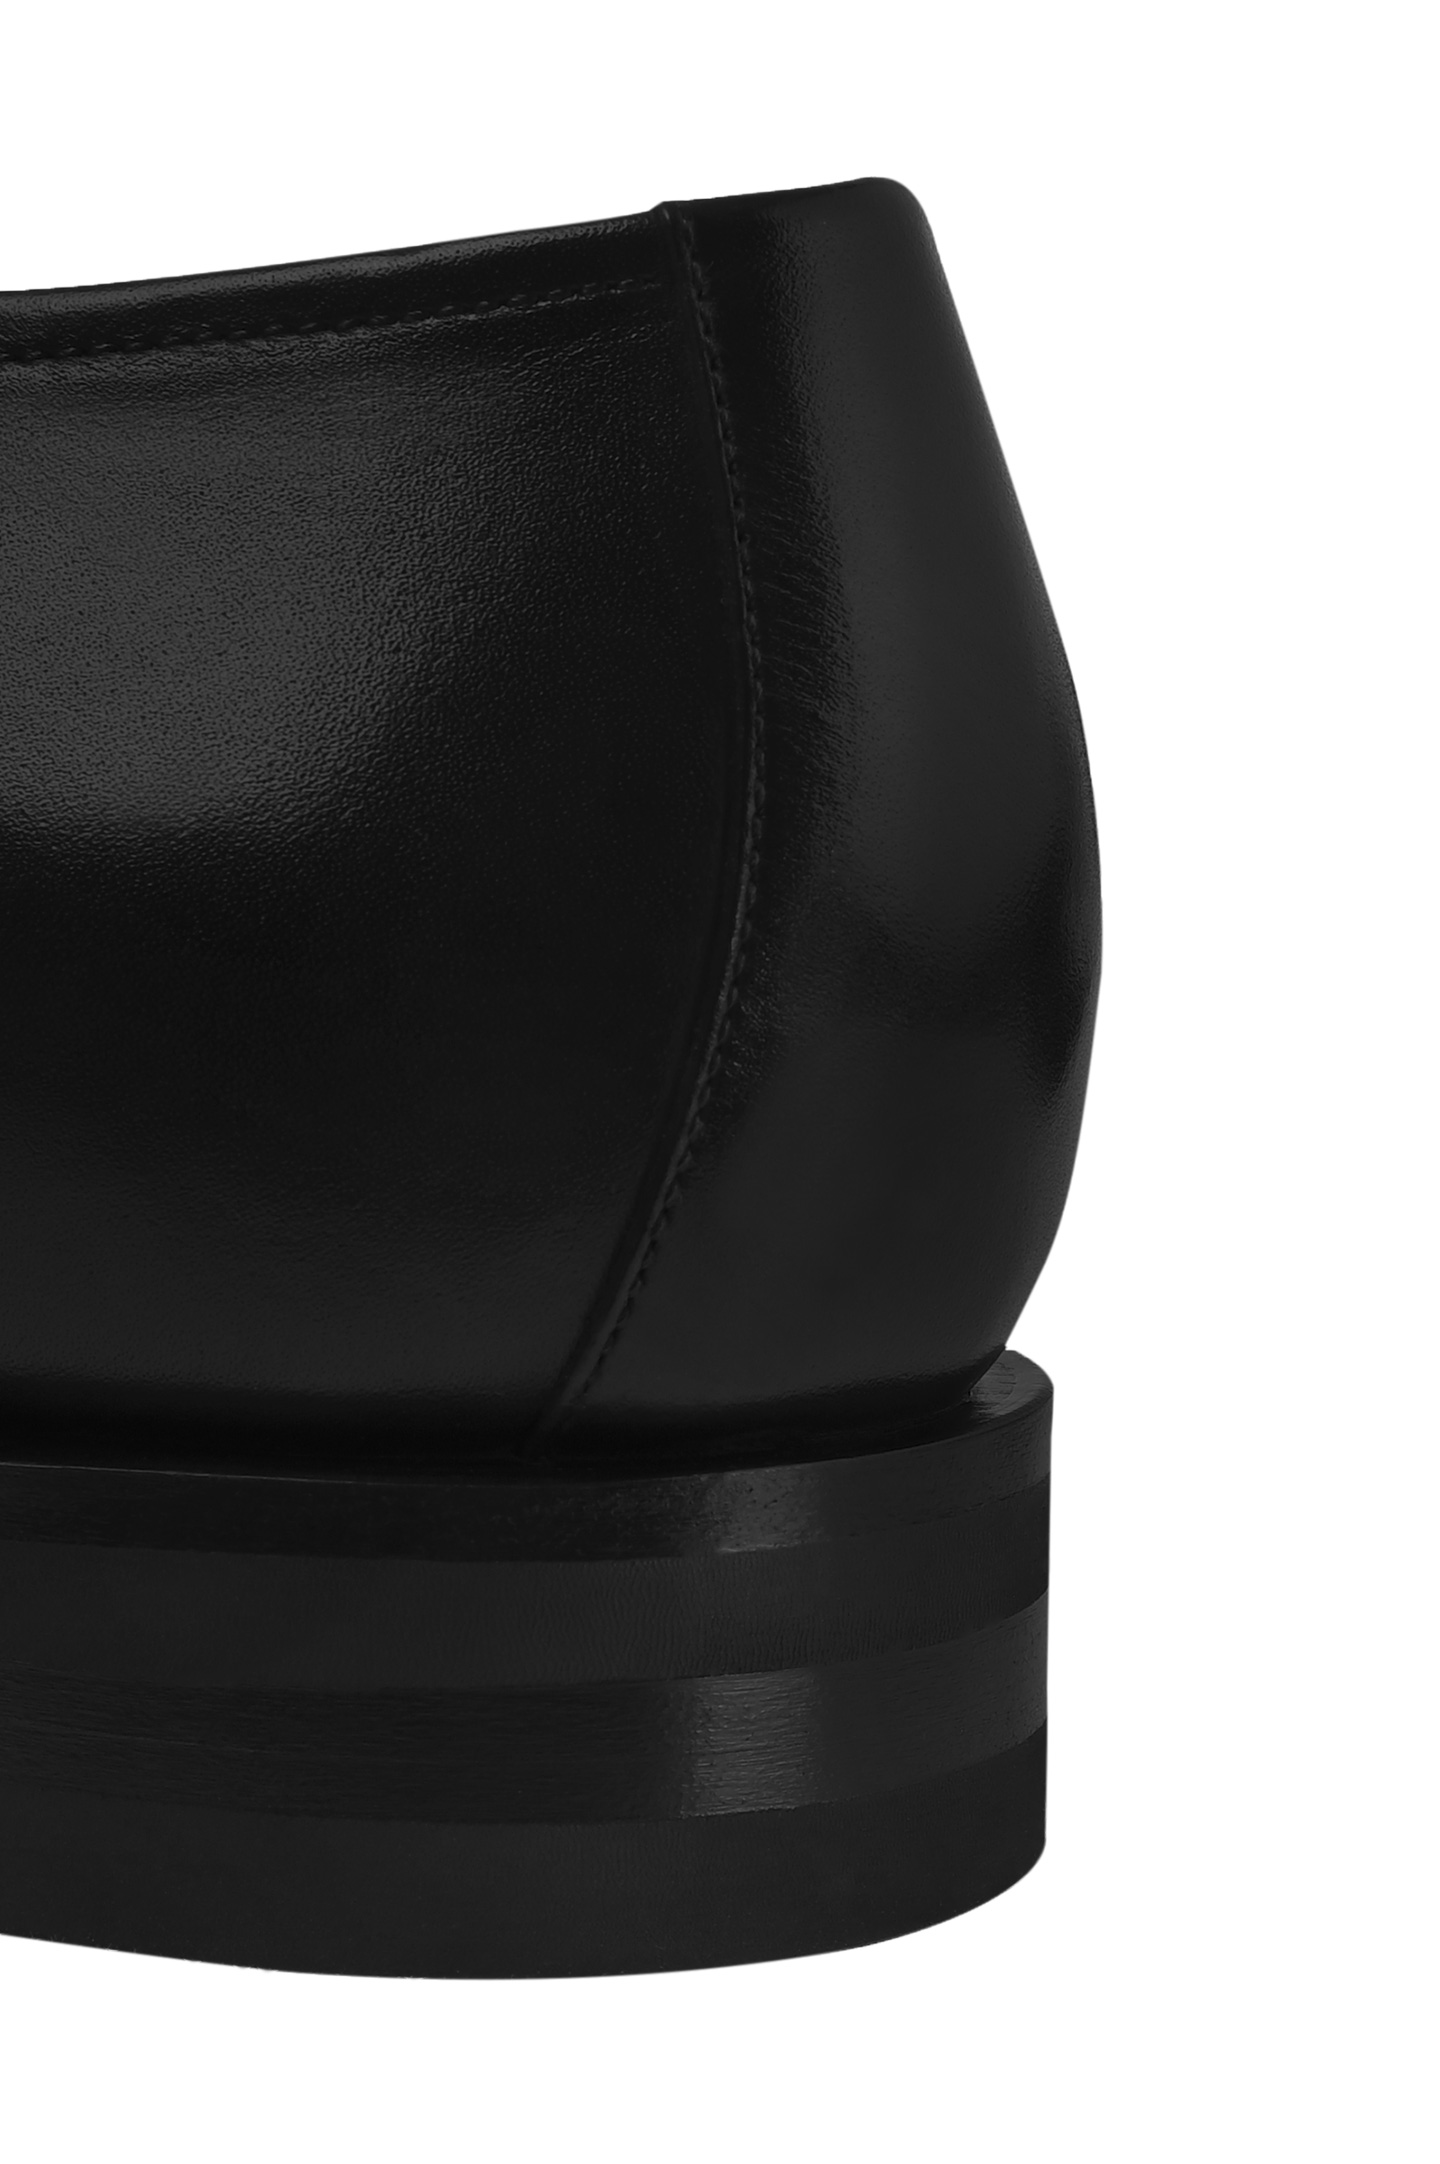 Туфли SANTONI MCJG18567PI2HDLNN01, цвет: Черный, Мужской